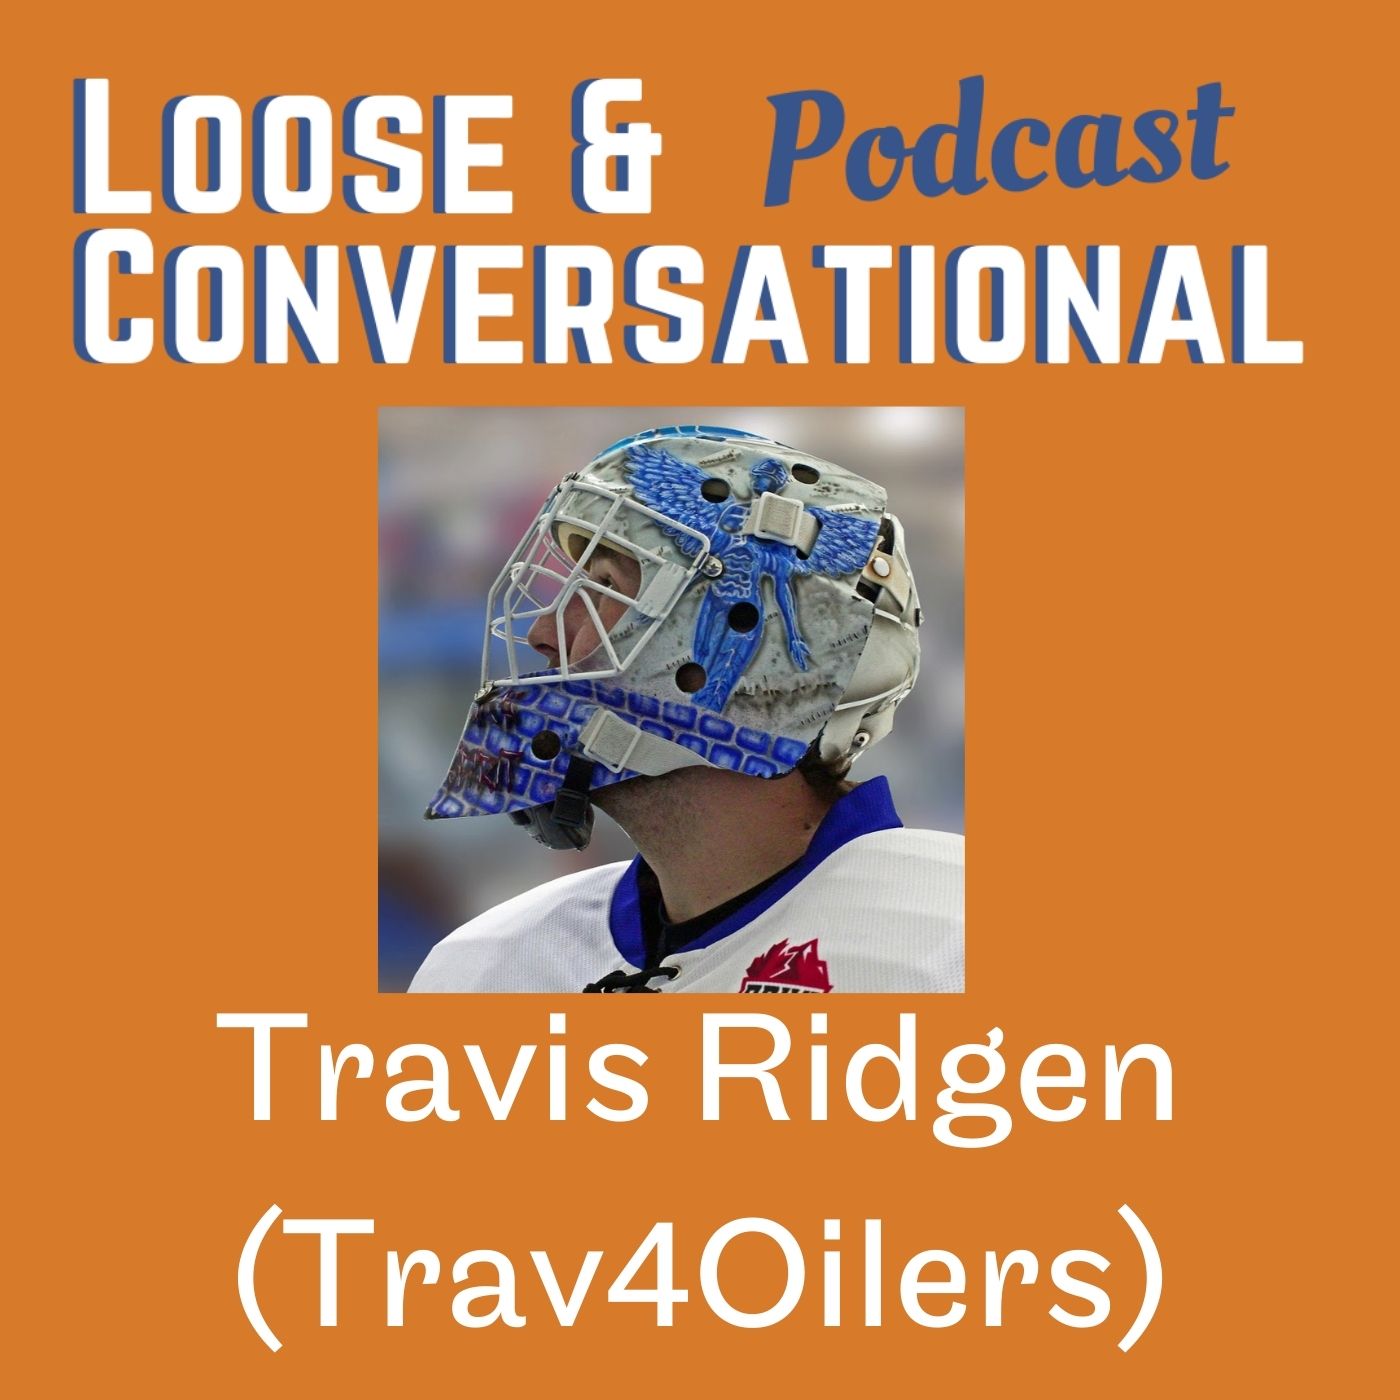 Episode 11: Trav4Oilers - Travis Ridgen